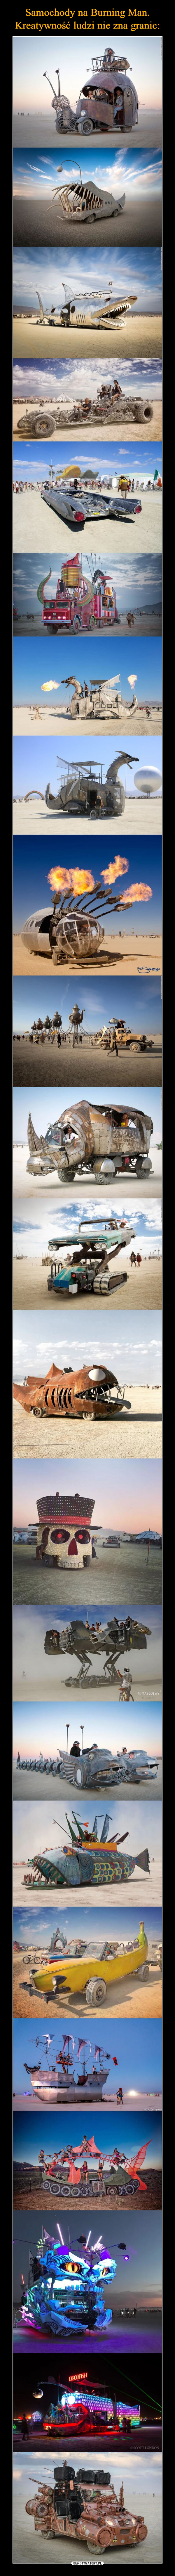 Samochody na Burning Man. Kreatywność ludzi nie zna granic: